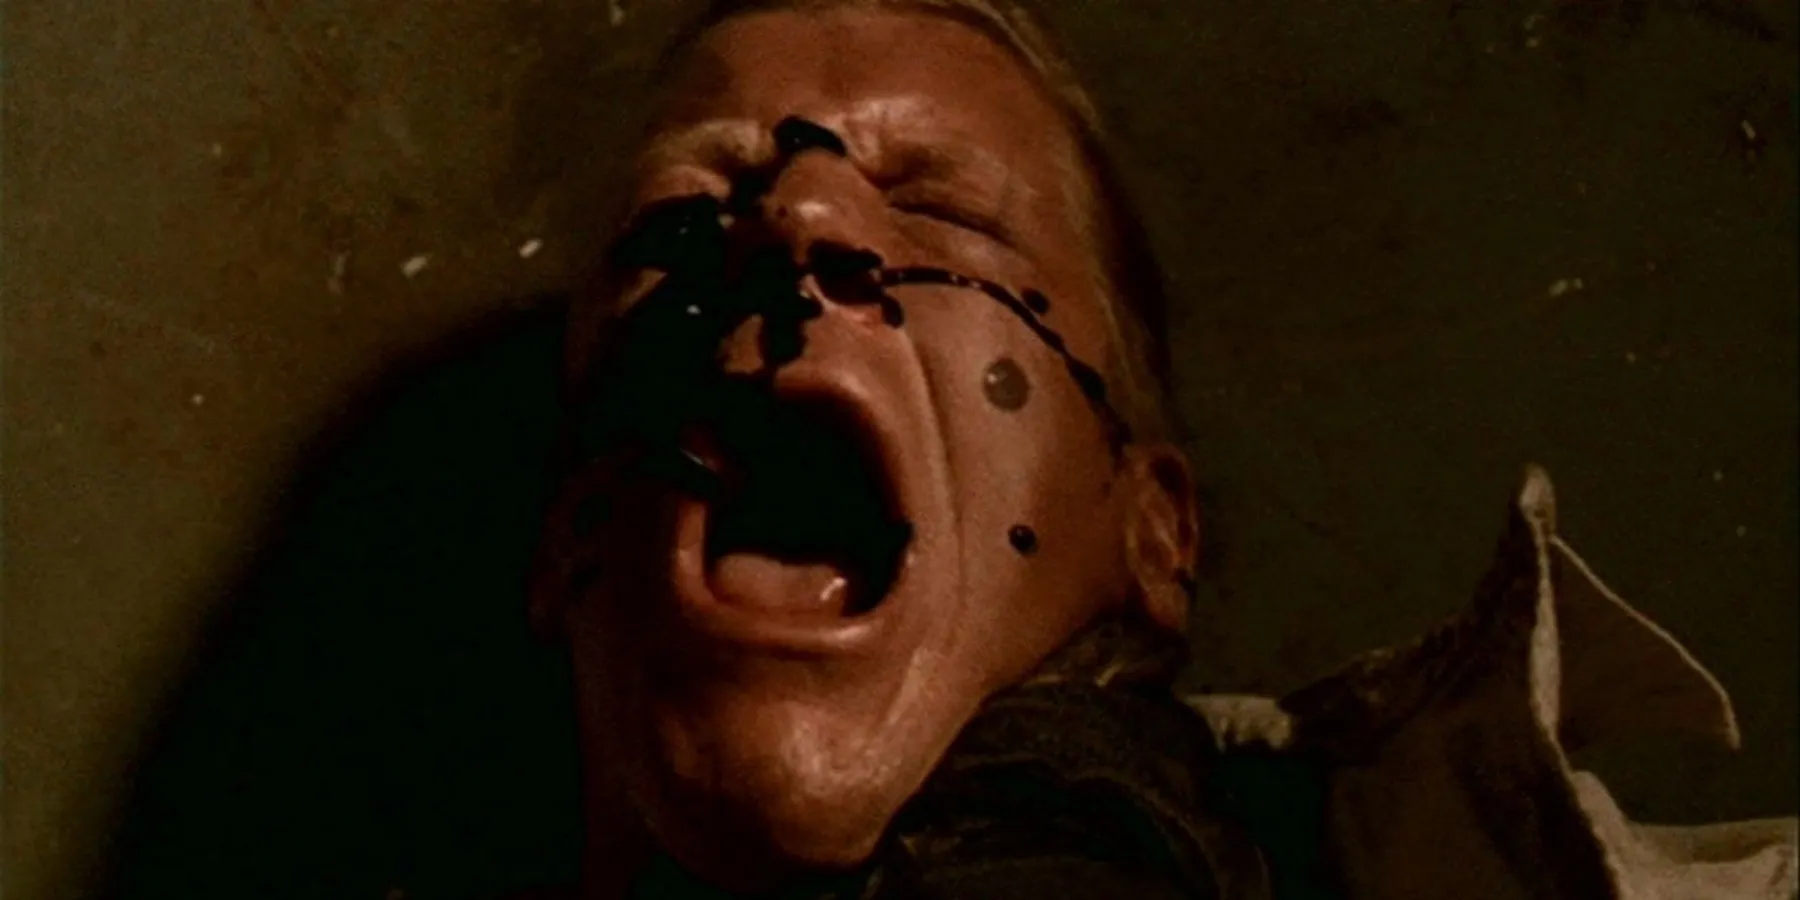 Черная нефть на лице мужчины в сериале The X-Files